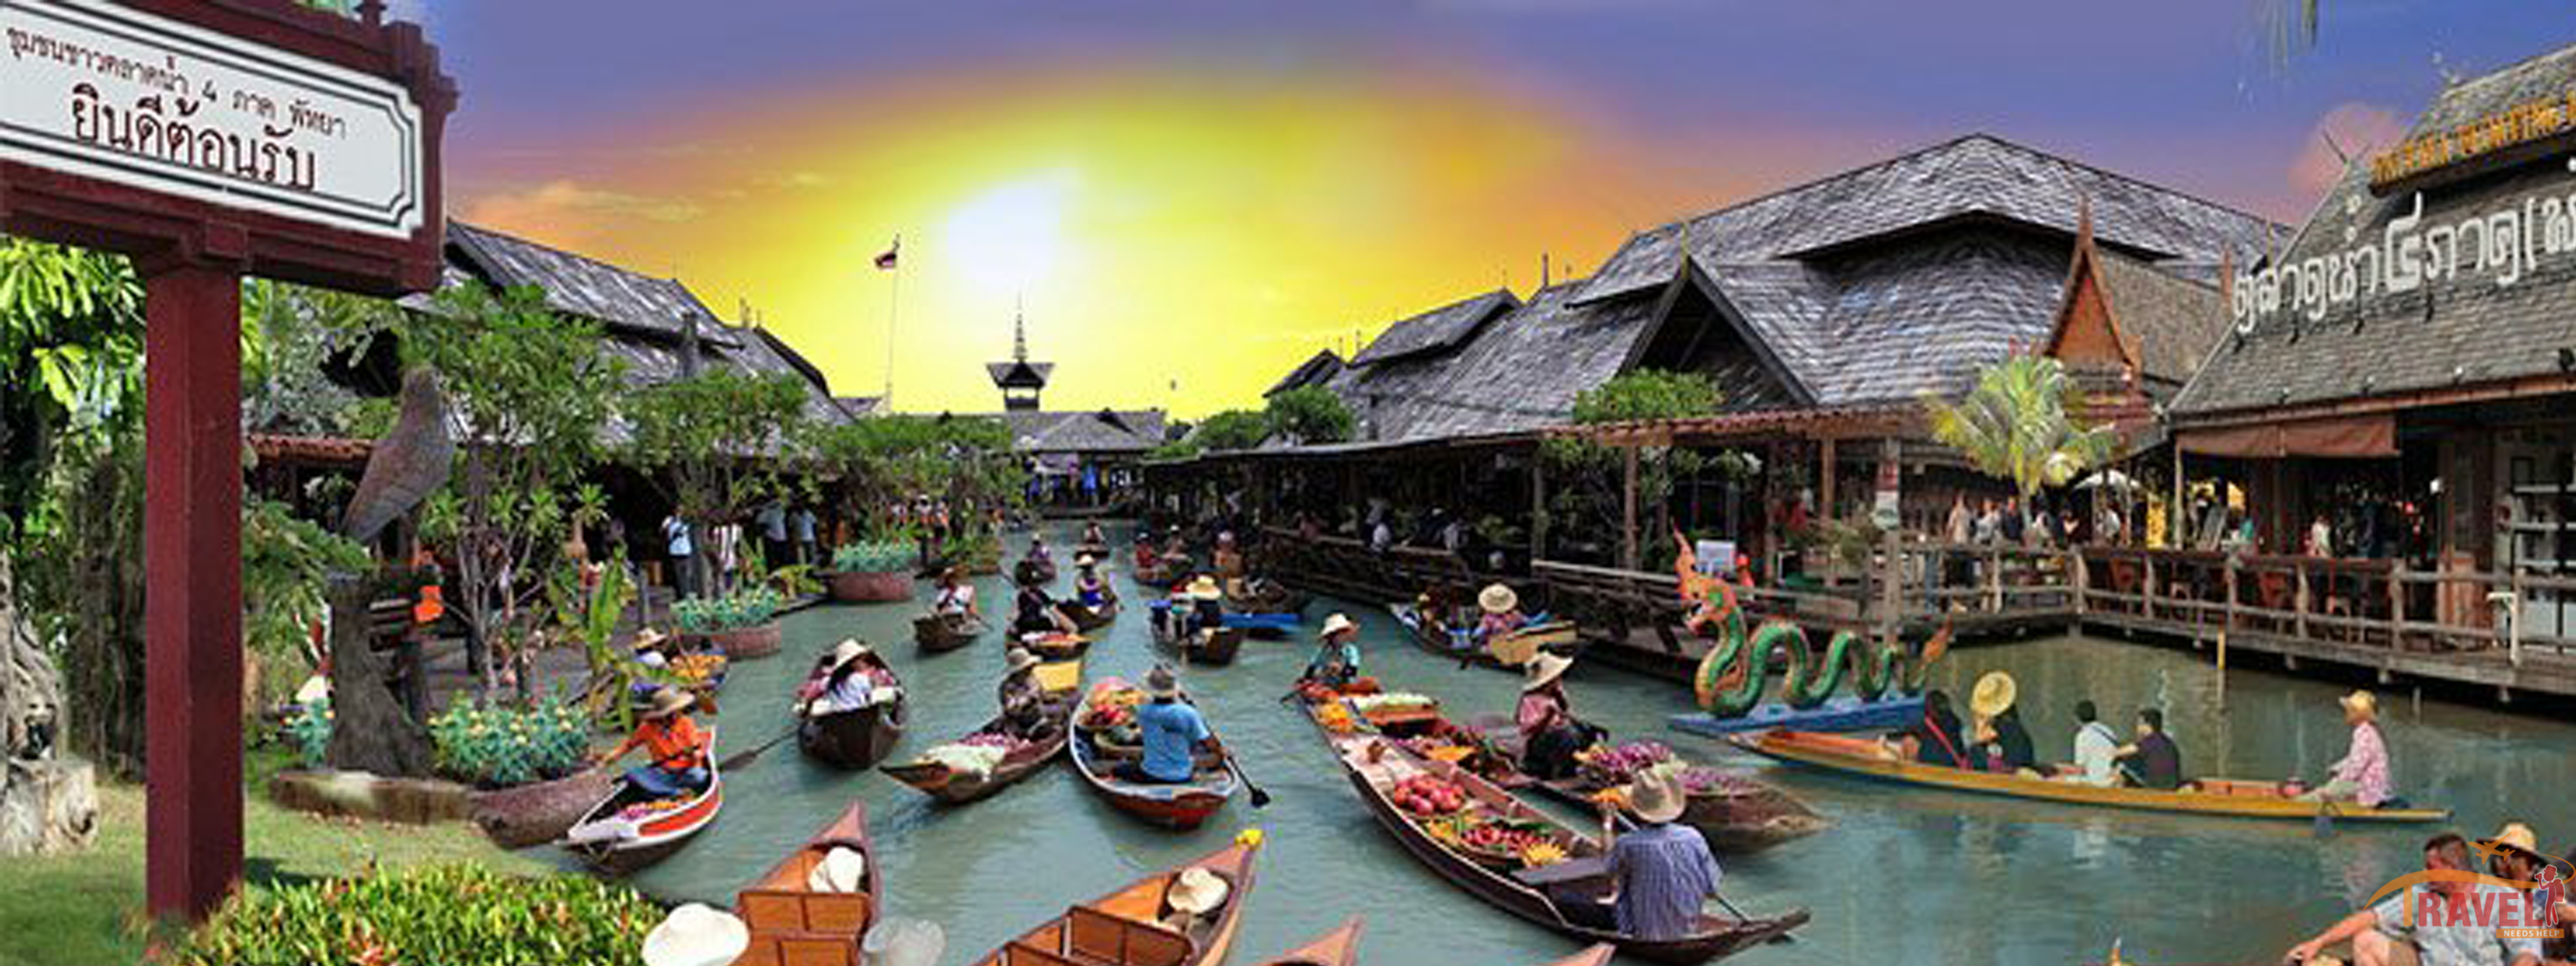 Pattaya Floating Market - Ticket Price, Timing | Travel ...